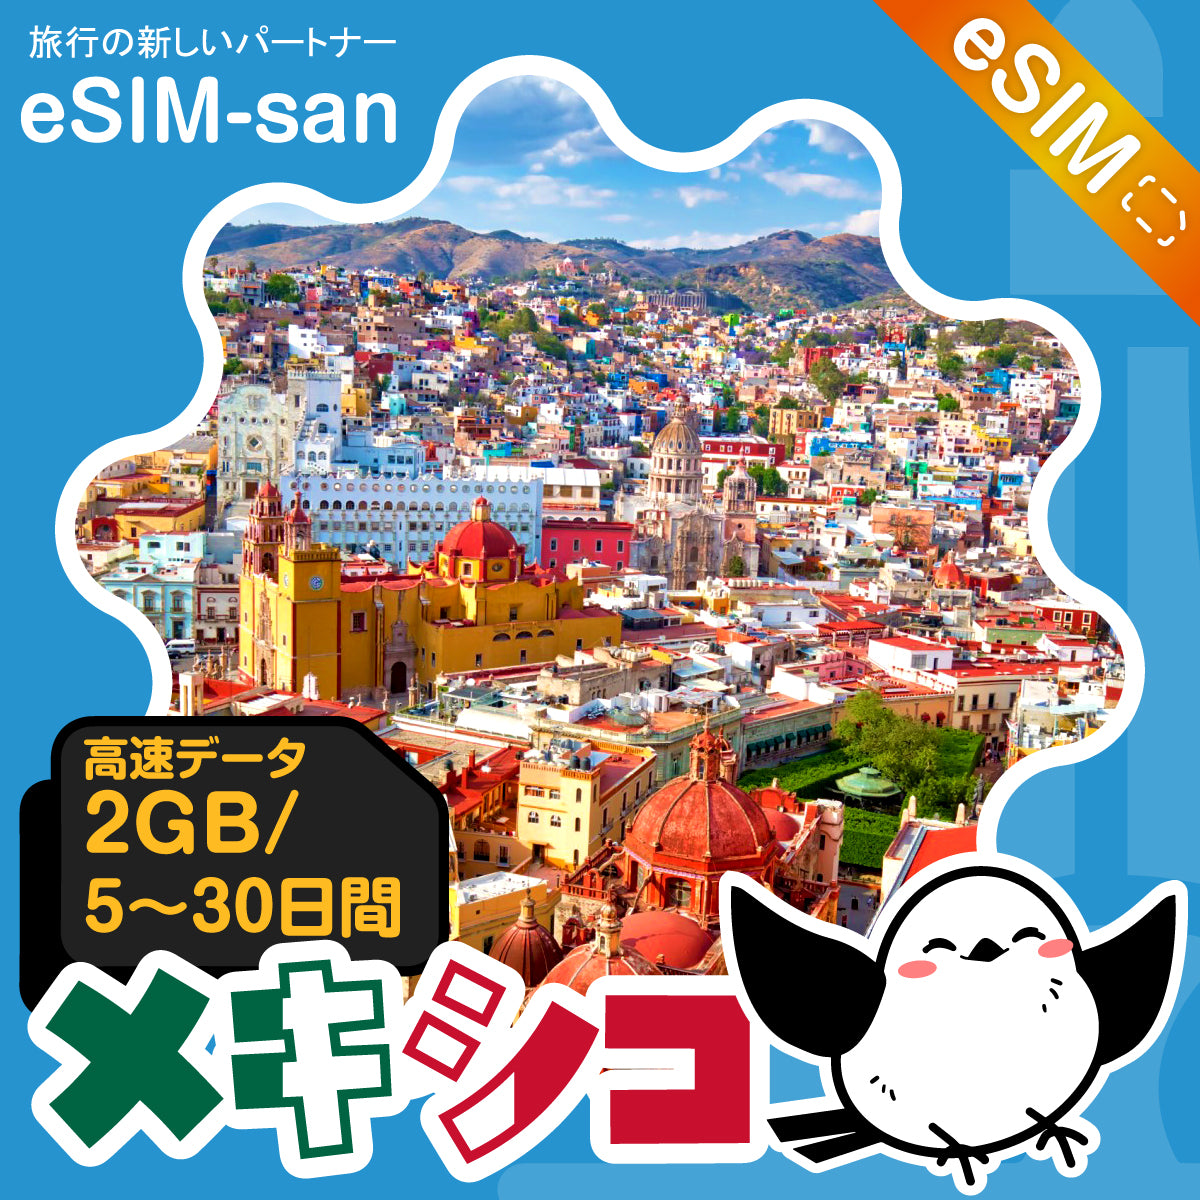 メキシコeSIMの2GB/dayプラン画像_eSIM-san